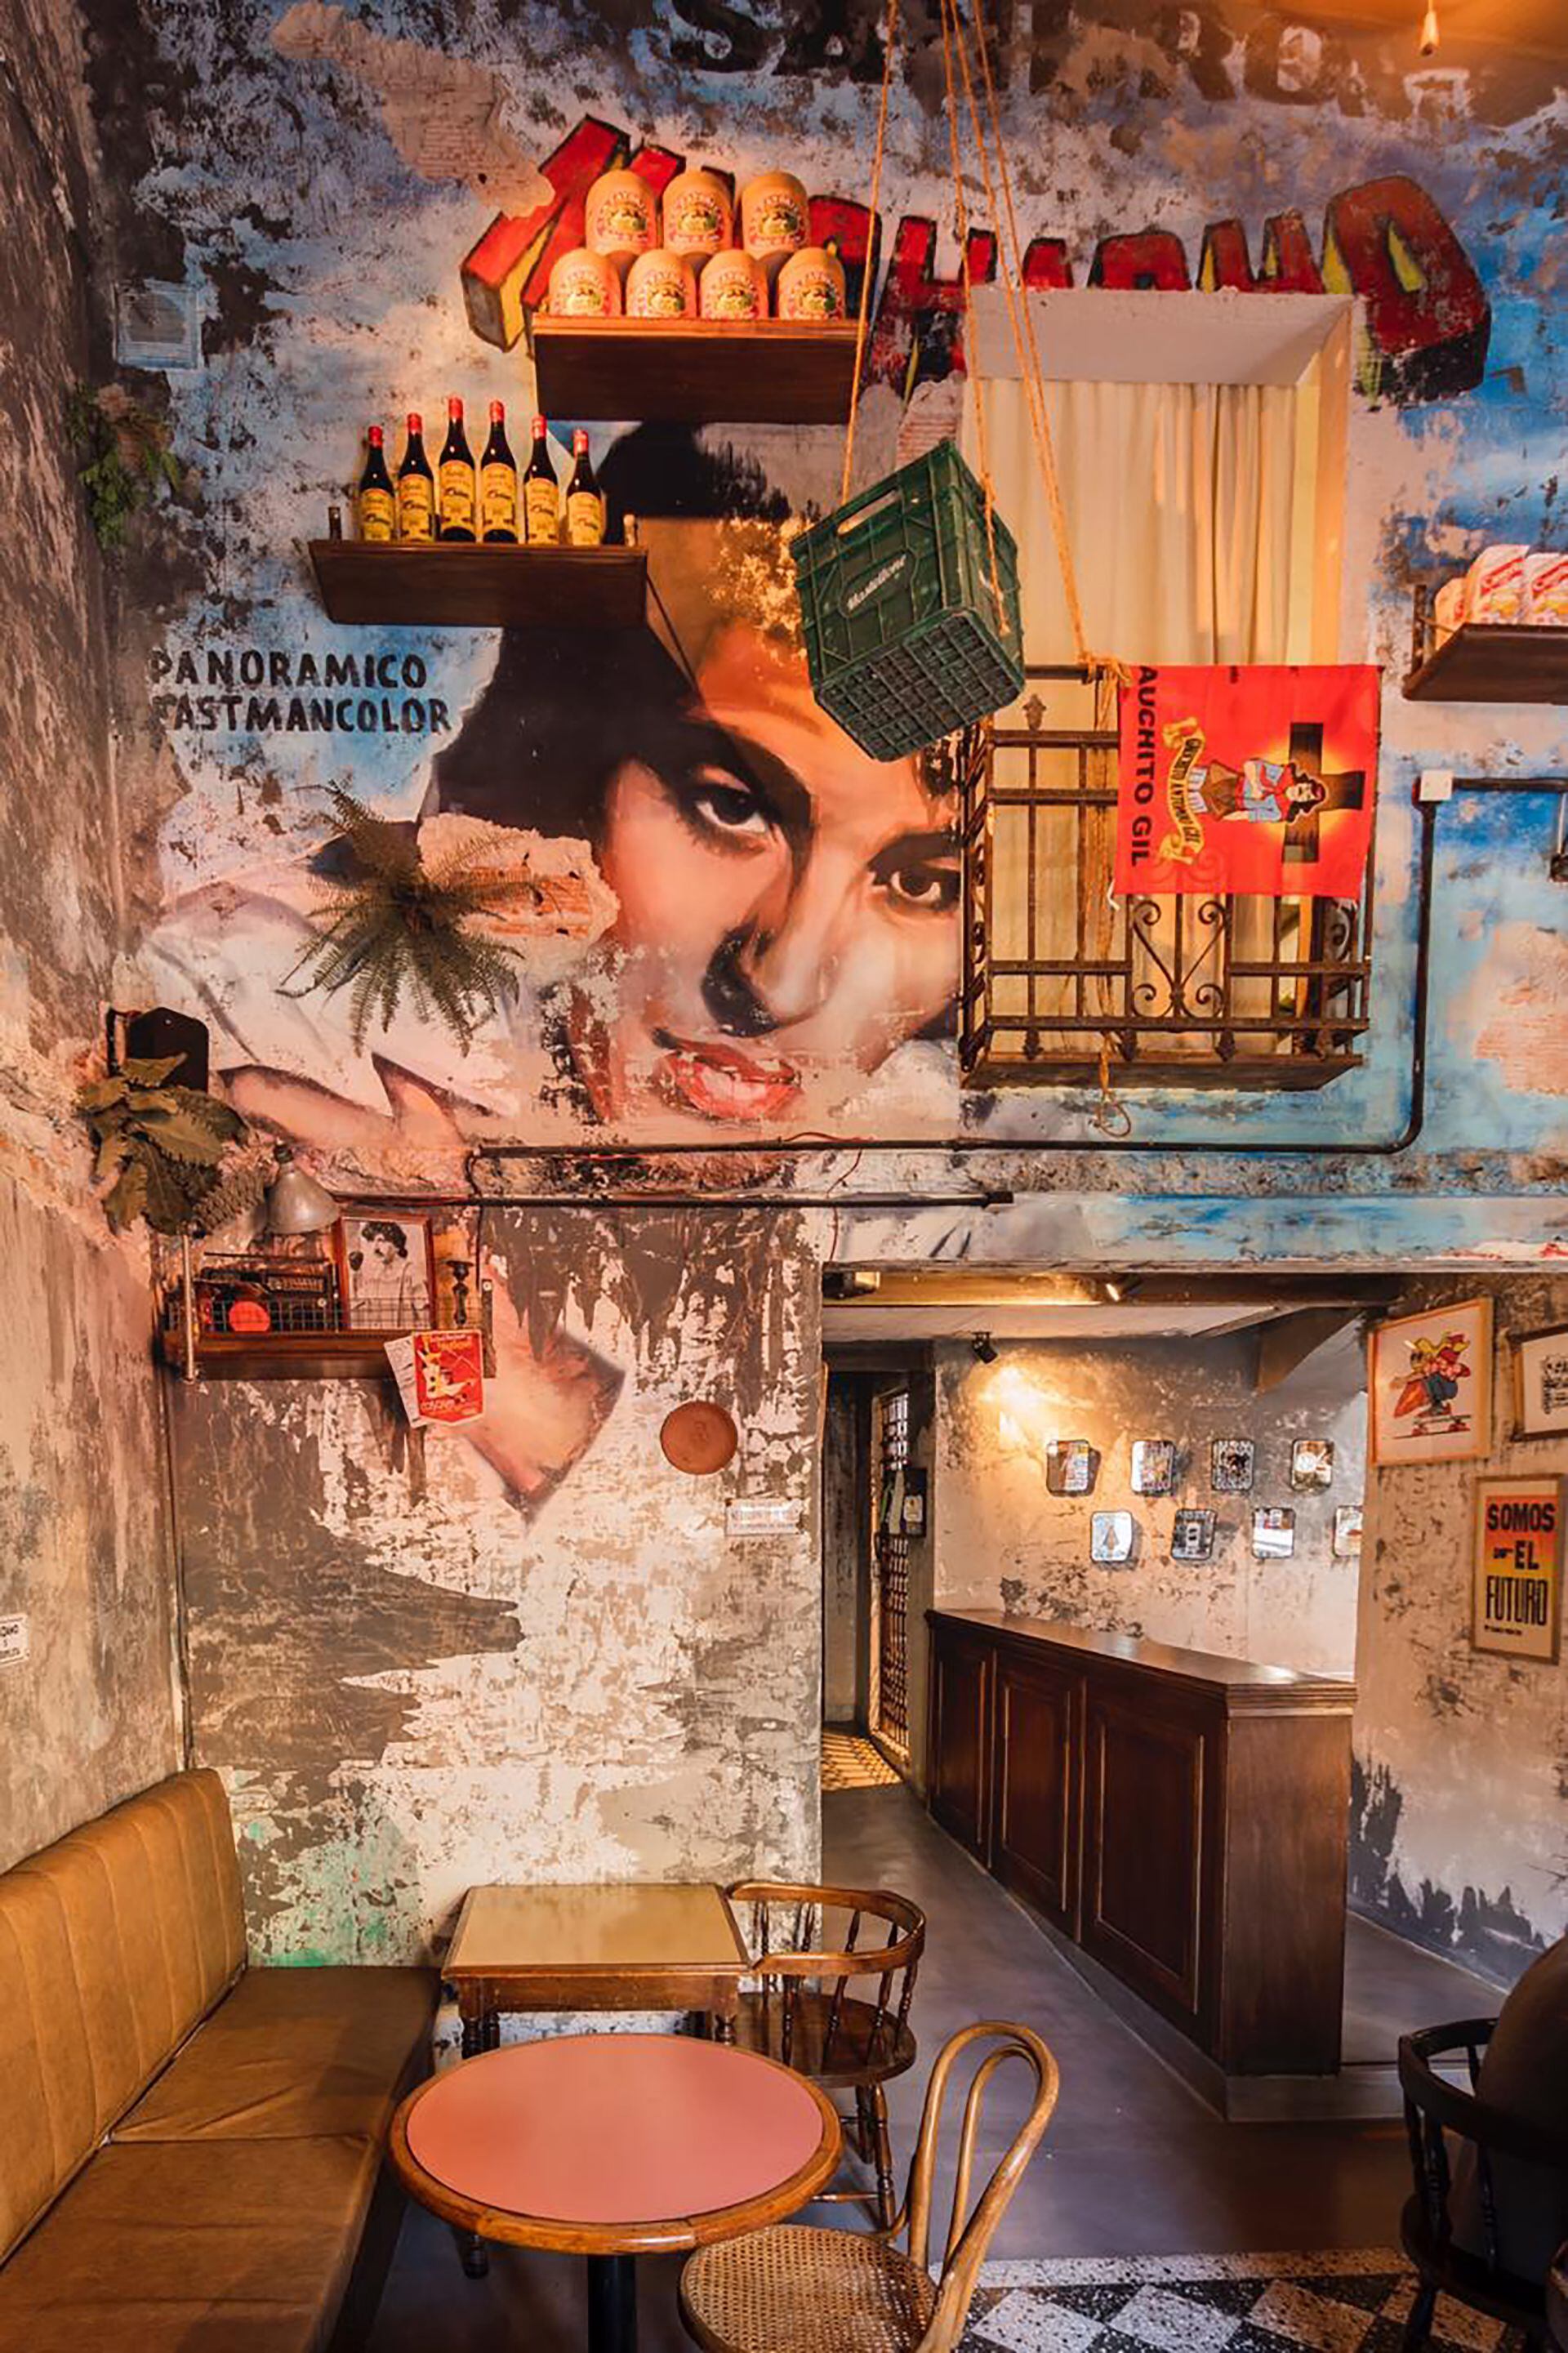 Ripani utiliza murales en casi todos sus proyectos de arquitectura. En La Favorita Cantina la idea era crear una cantina con íconos populares de la historia argentina